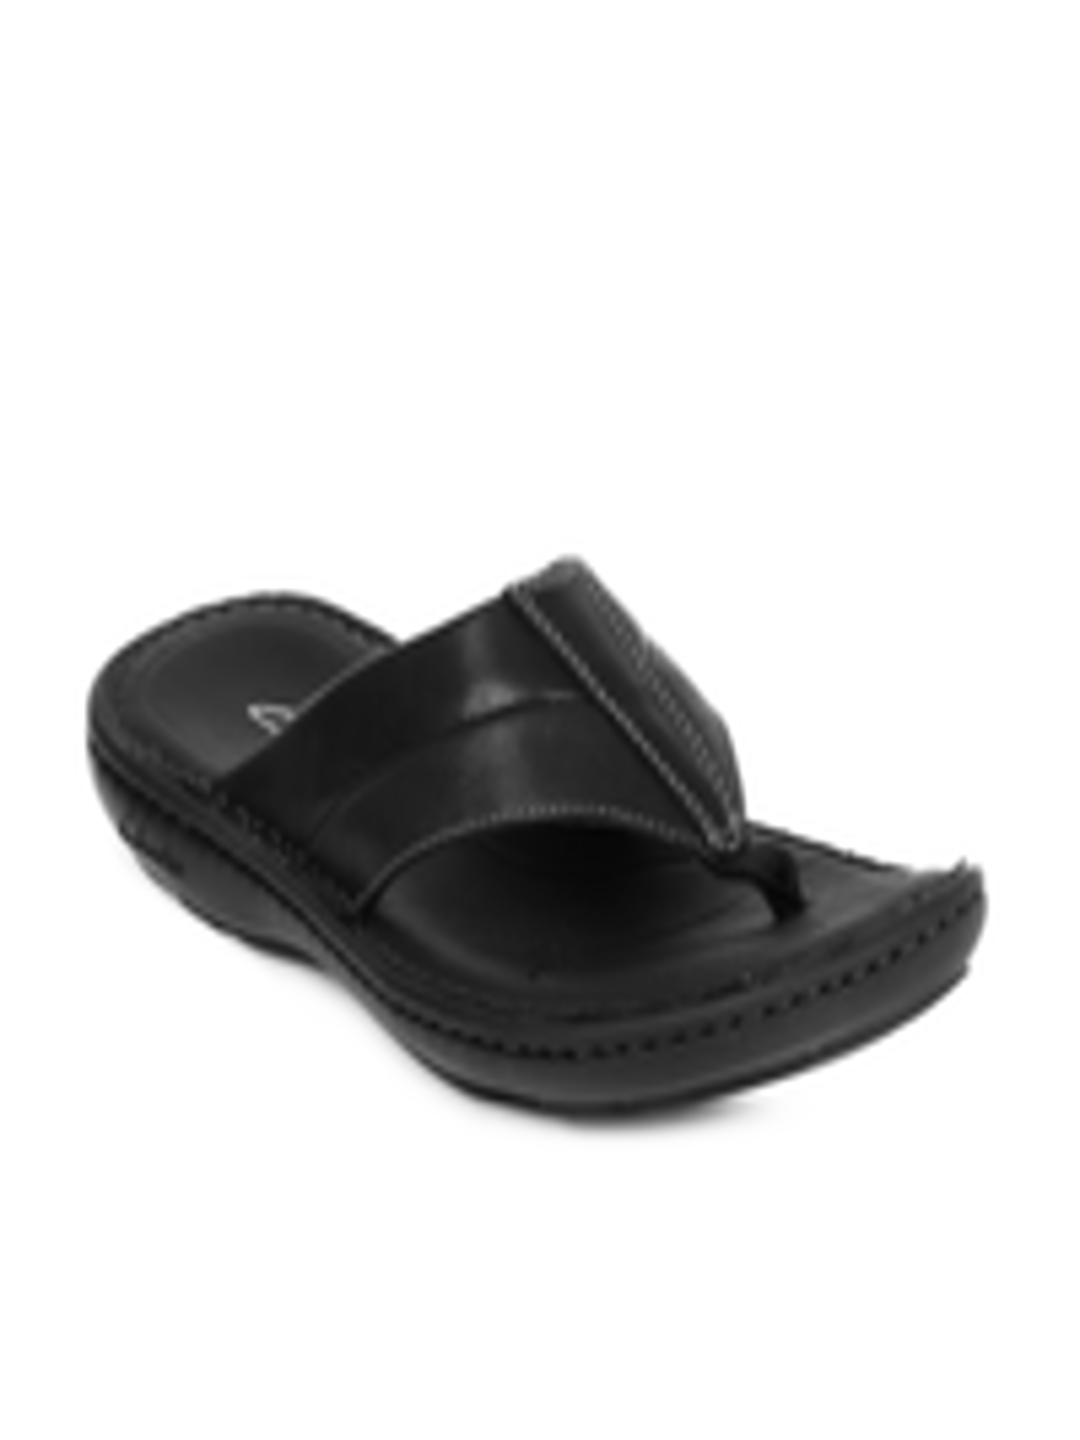 Buy Clarks Men Black Leather Sandals - Sandals for Men 1698292 | Myntra